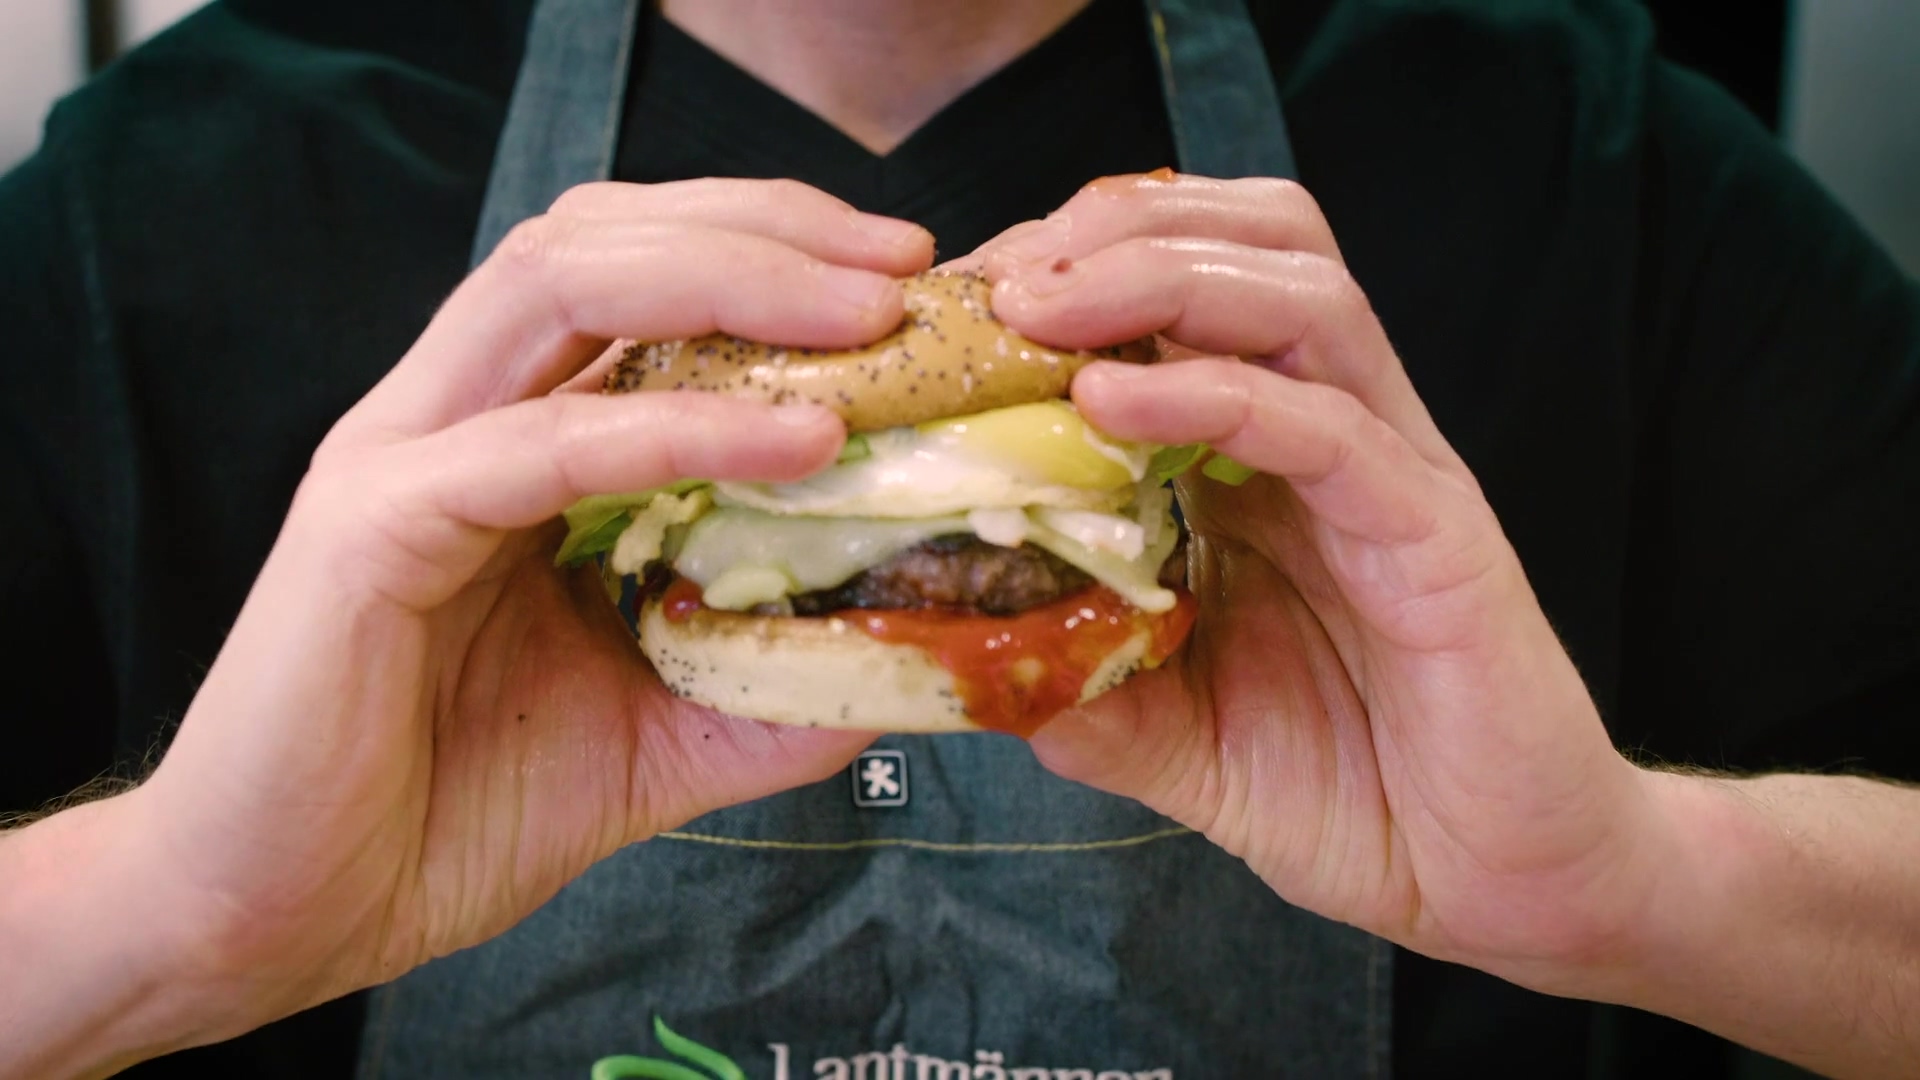 Lantmannen 0120 Burger Chef Pekka Koponen 1080p_v3